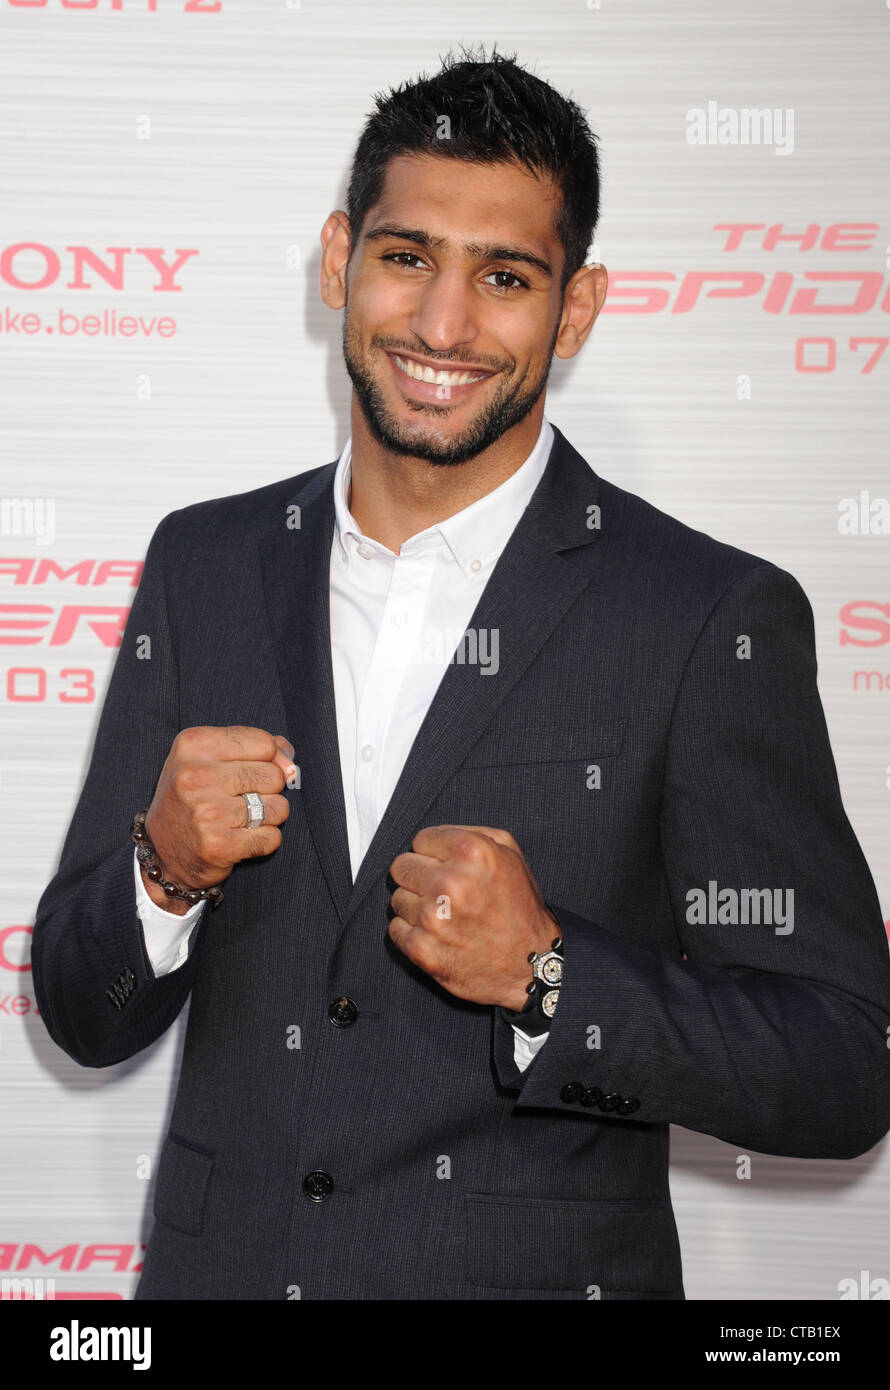 AMIR KHAN britischer Boxer bei einem Hollywood-Event im Juni 2012. Foto Jeffrey Mayer Stockfoto